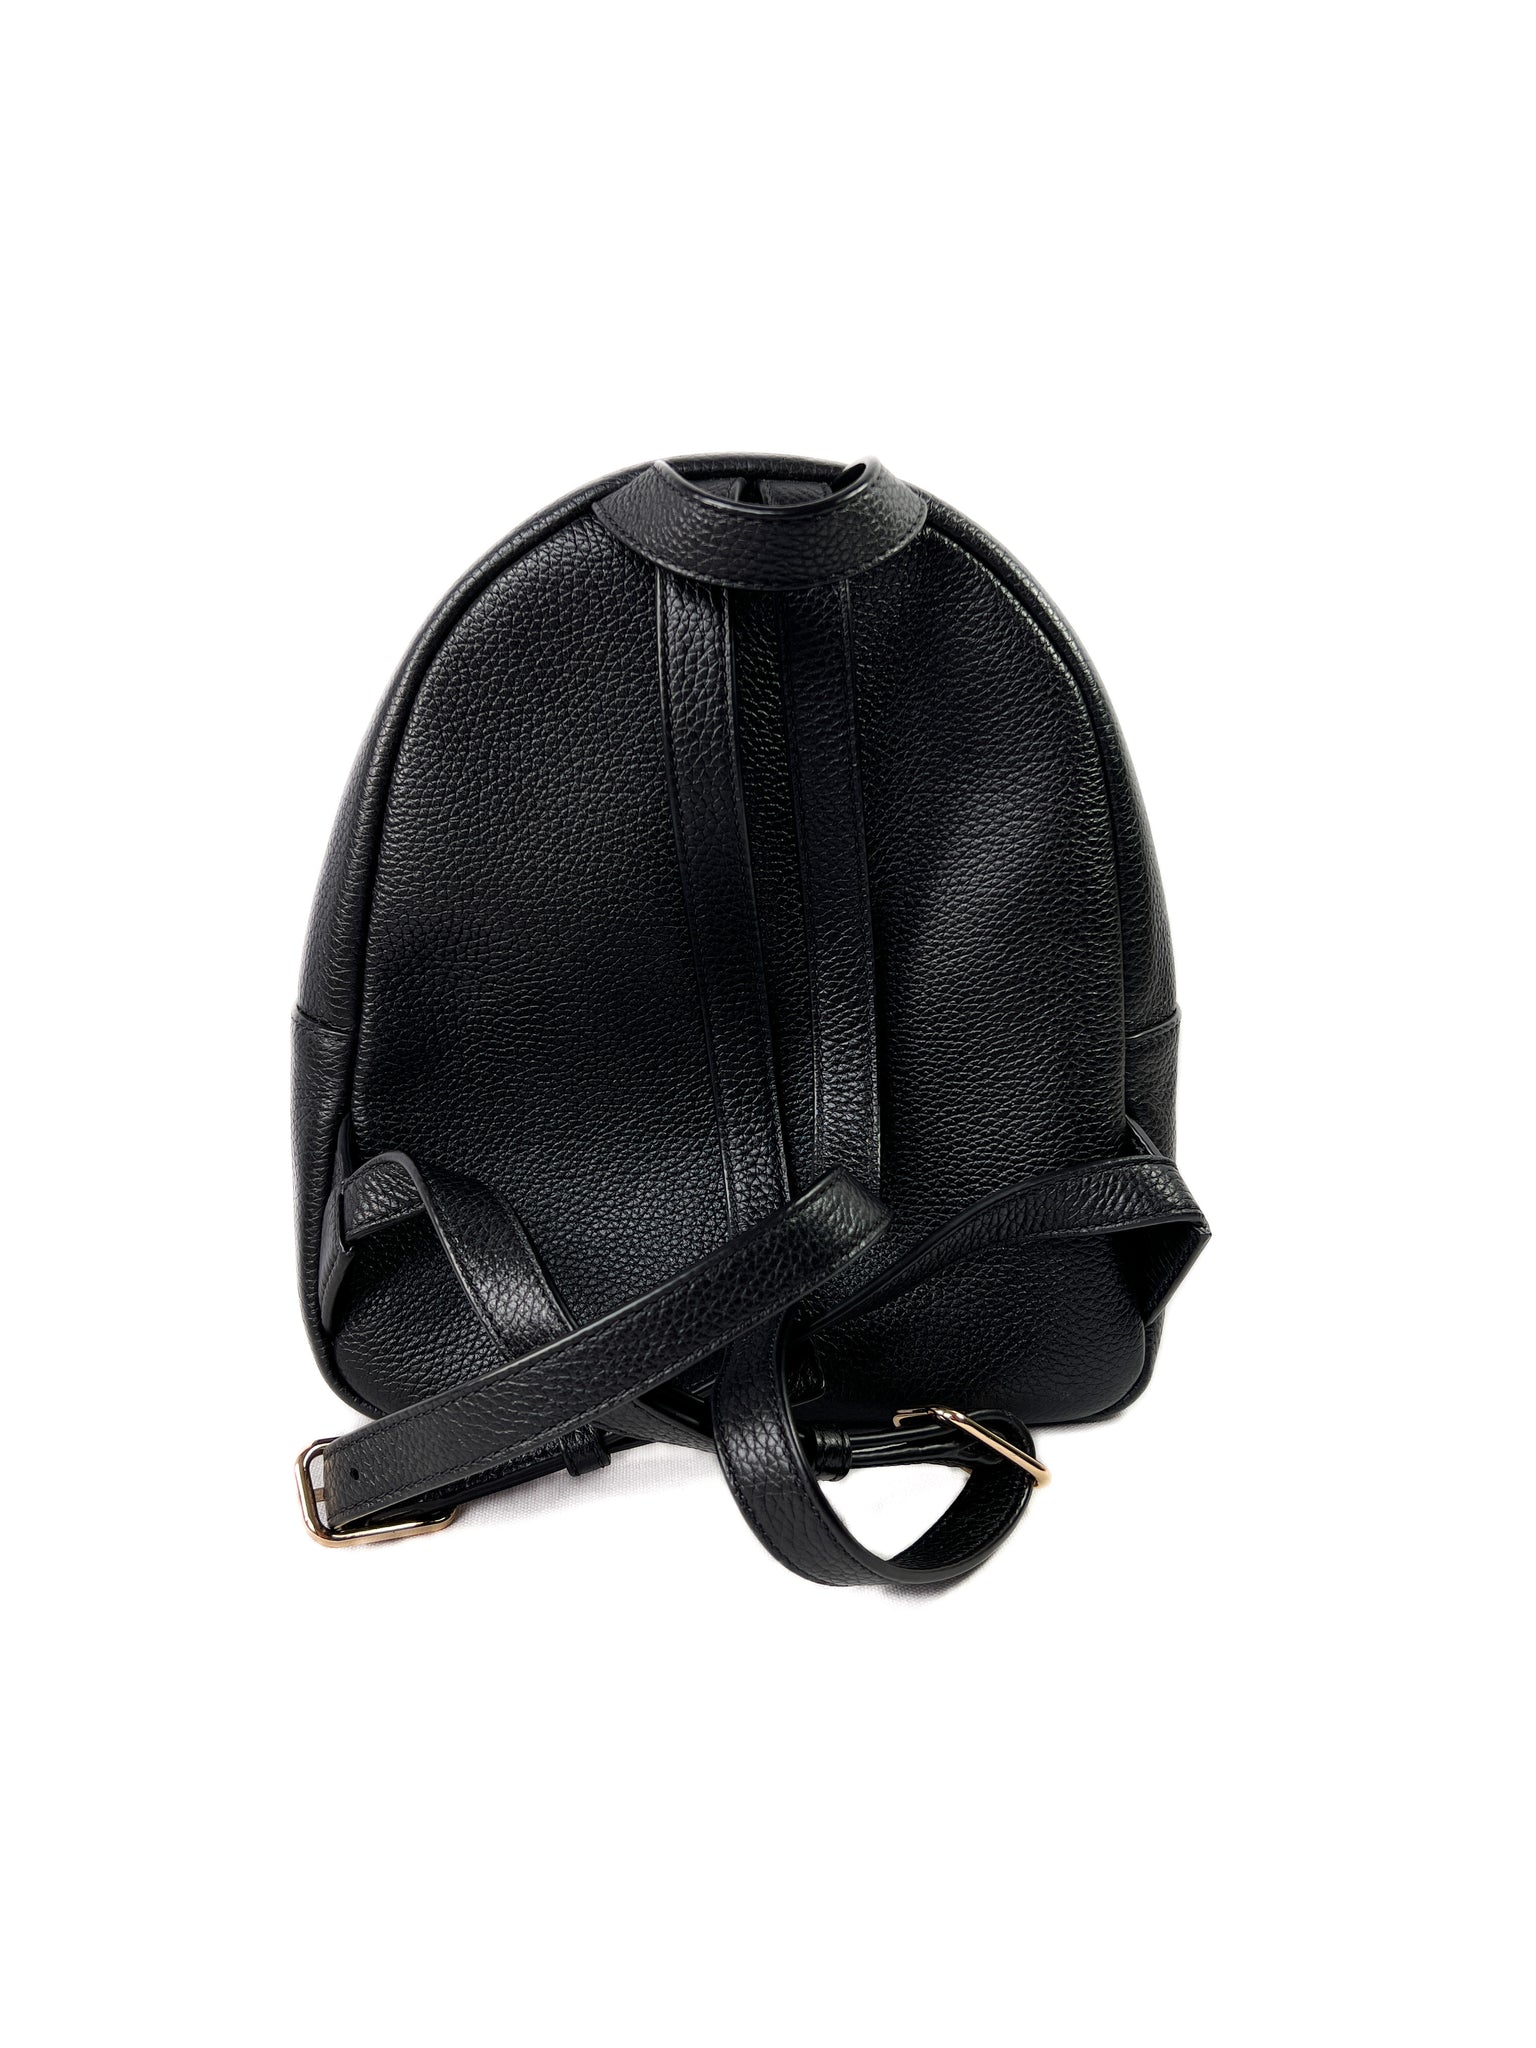 473 TORY BURCH Thea Mini Backpack BLACK